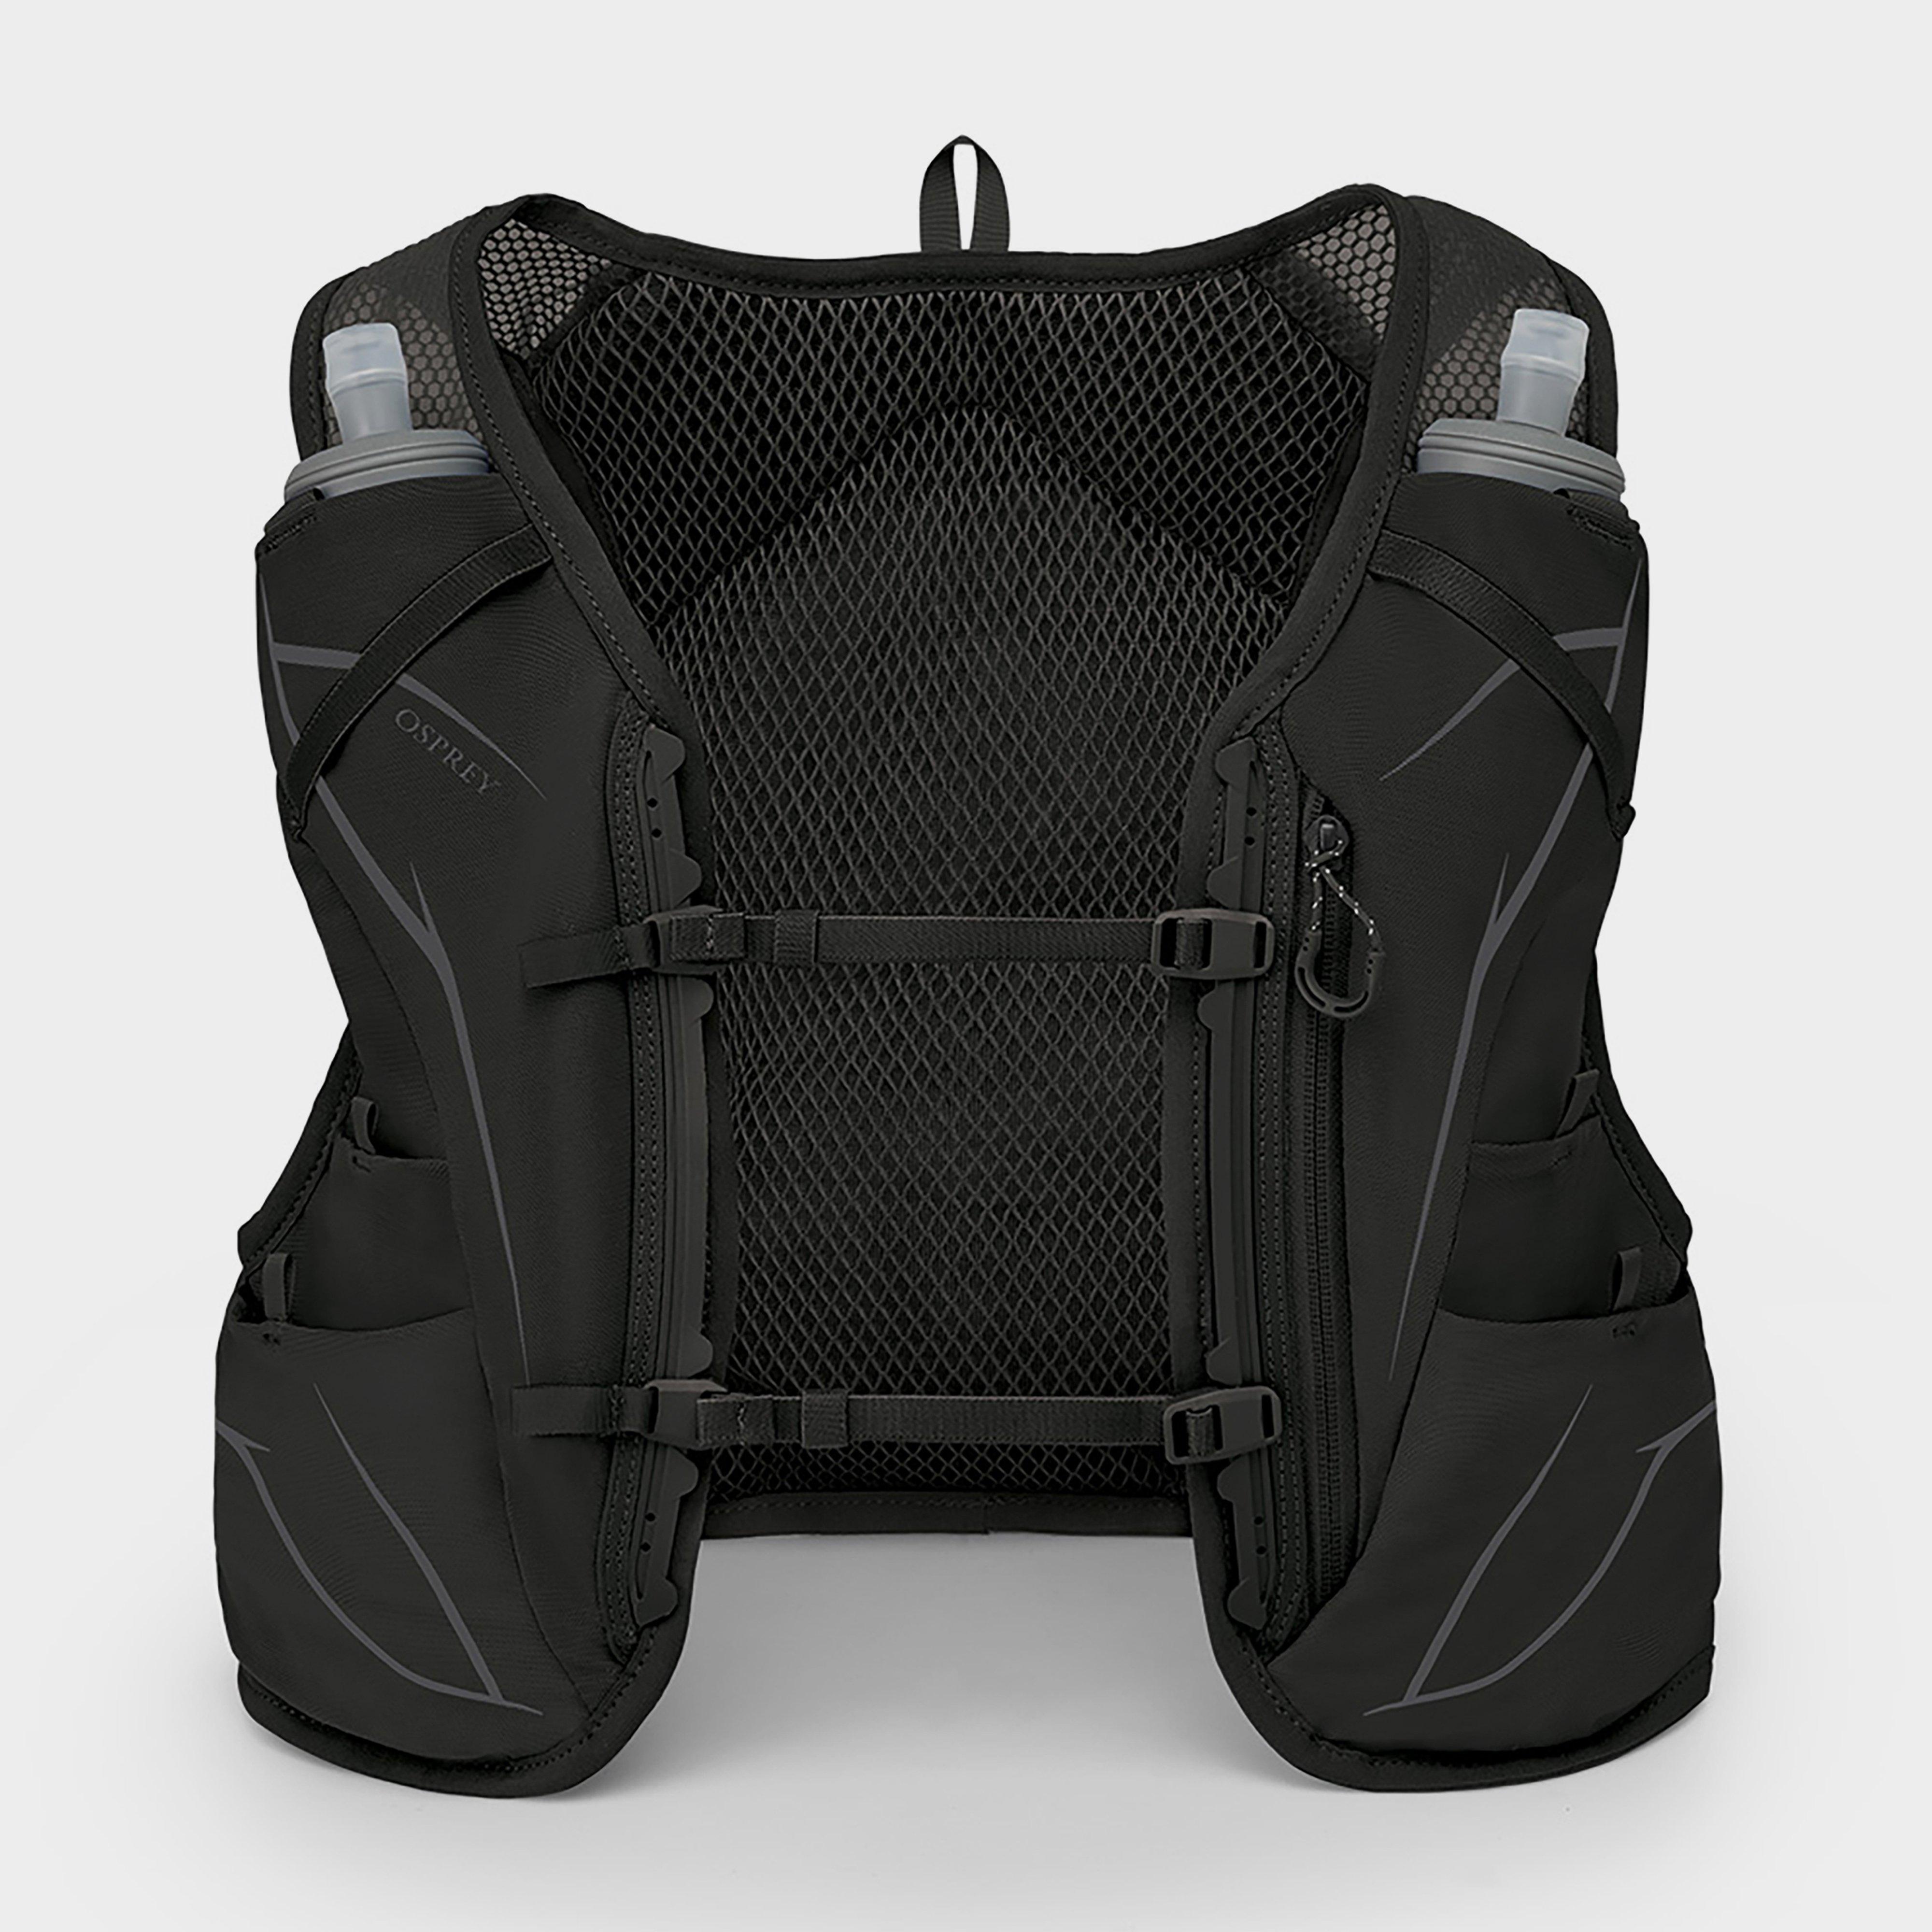 Schleich Duro 6 Hydration Vest (medium) - Black/black  Black/black